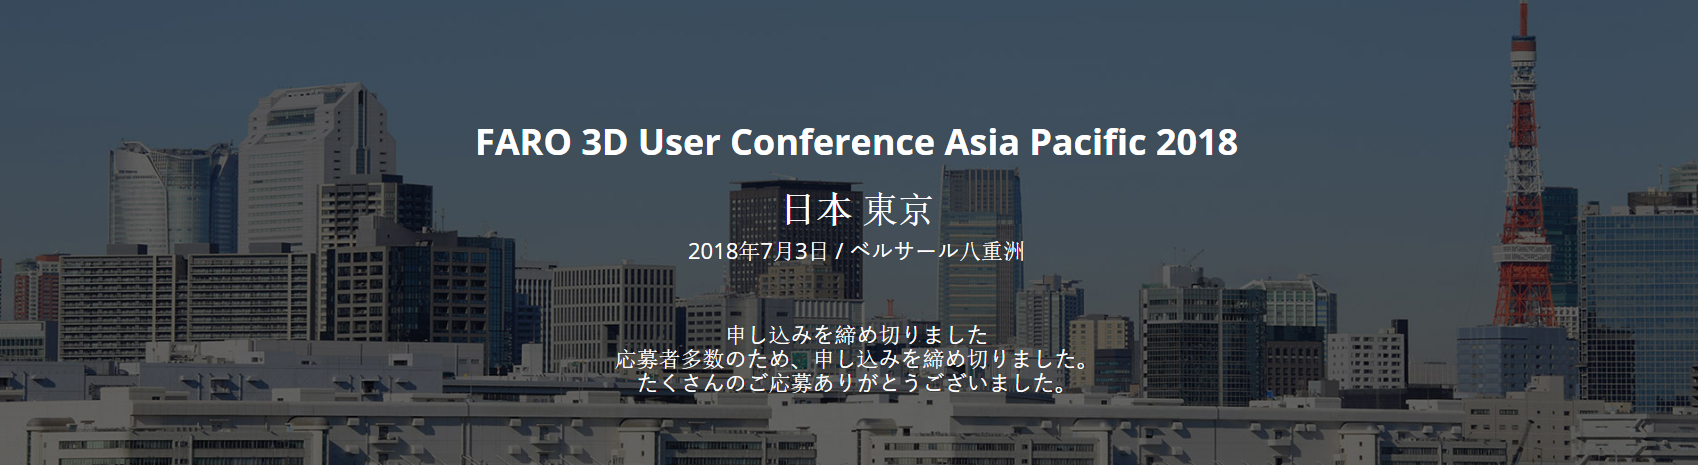 Faro User Conference Tokyo 2018